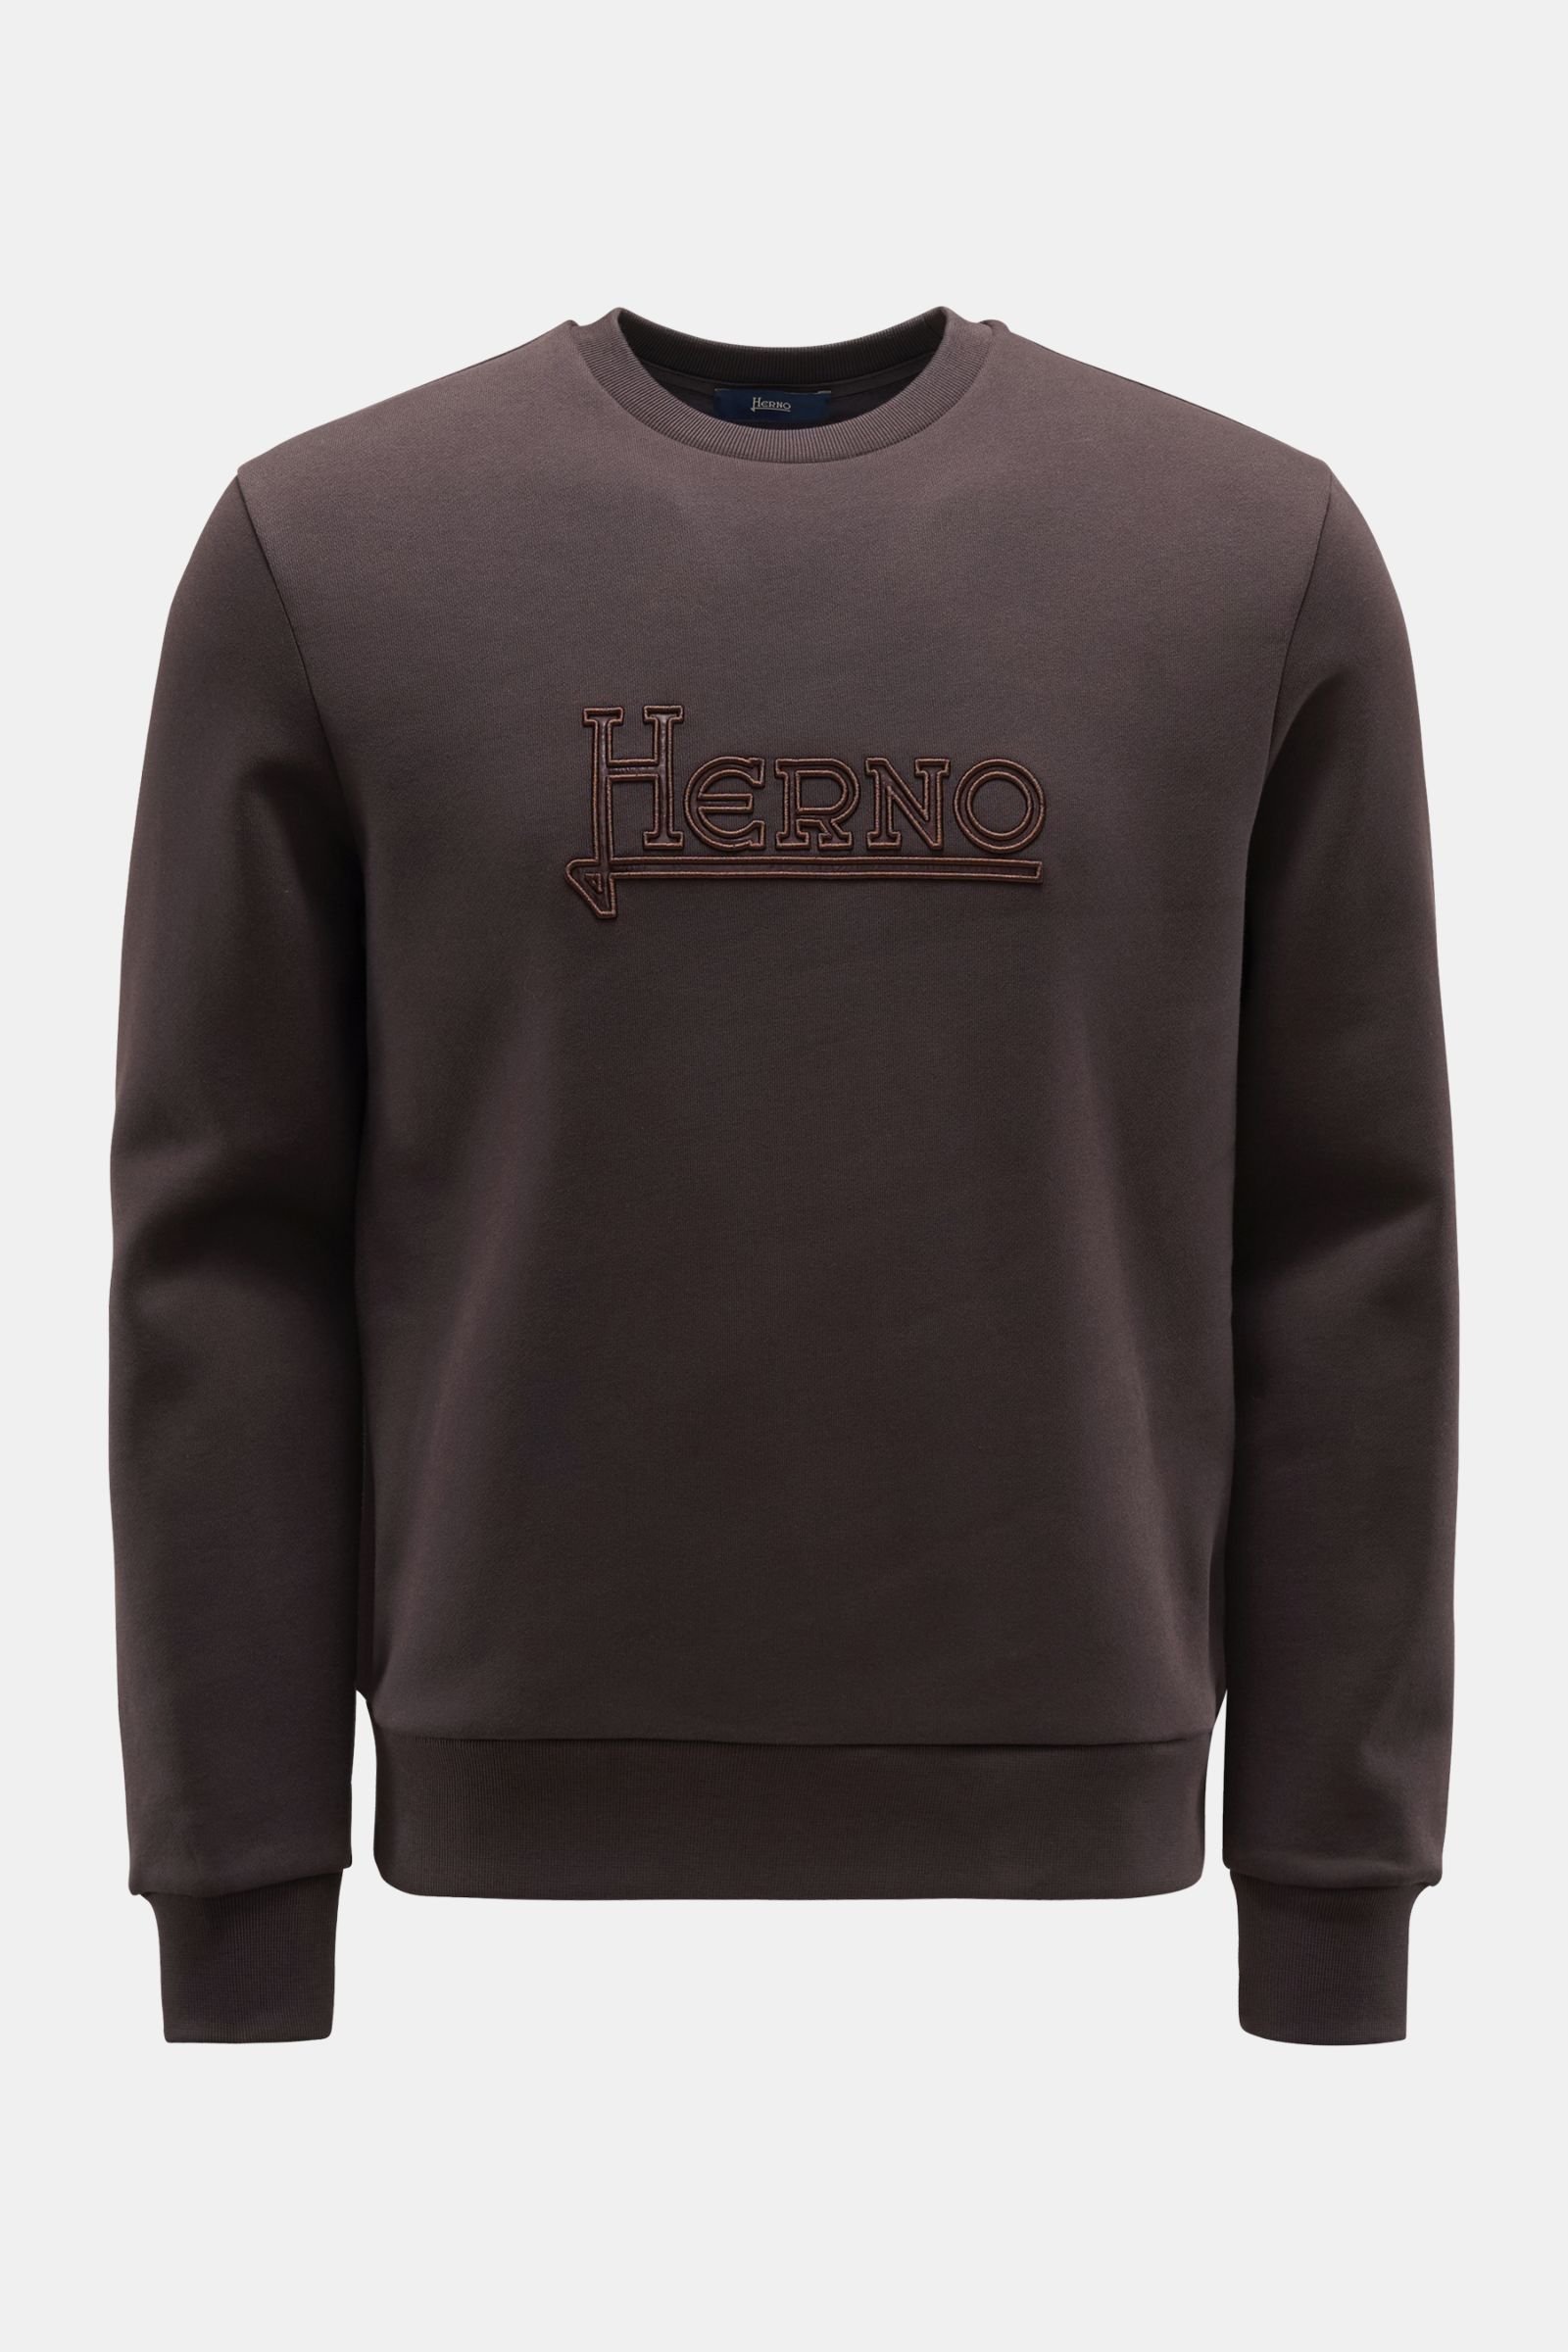 'Favonio' crew neck sweatshirt dark brown